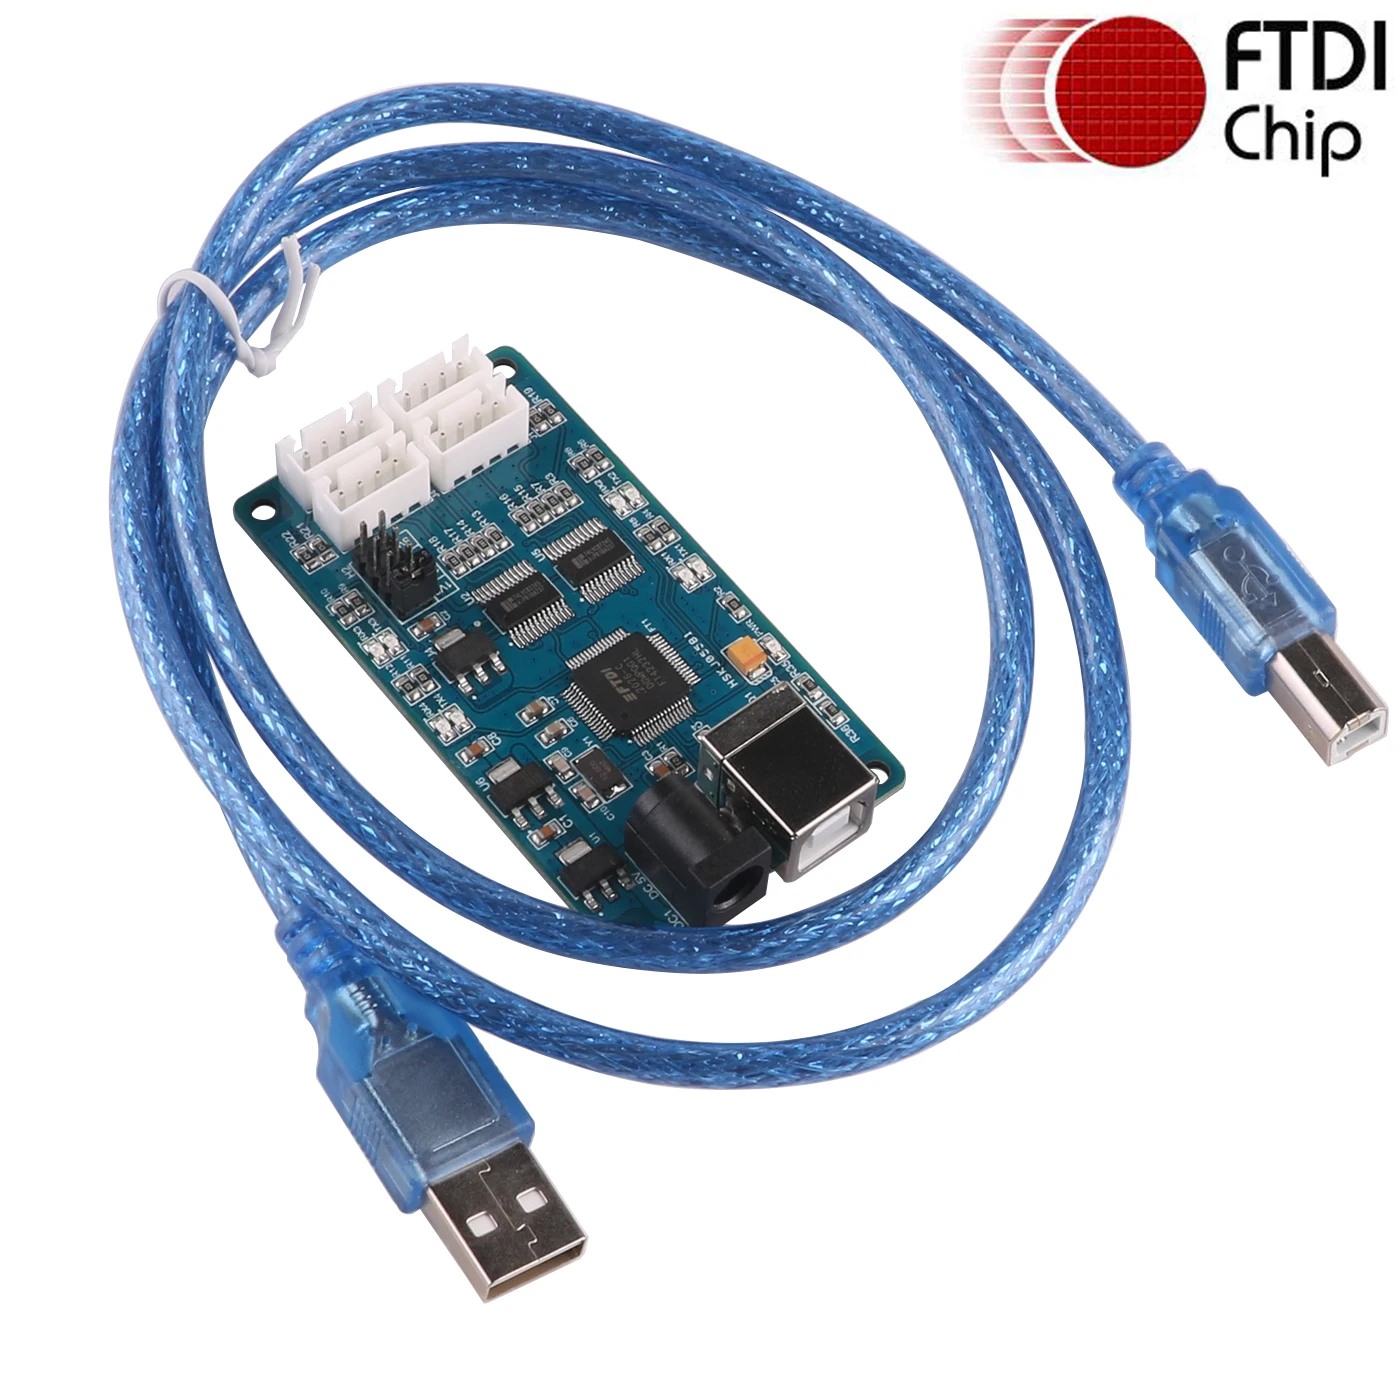 

FTDI FT4232HL USB to 4 Channels 1.8v 2.5v 3.3v 5v TTL UART Logic Level Serial Converter Adapter Communication Cable